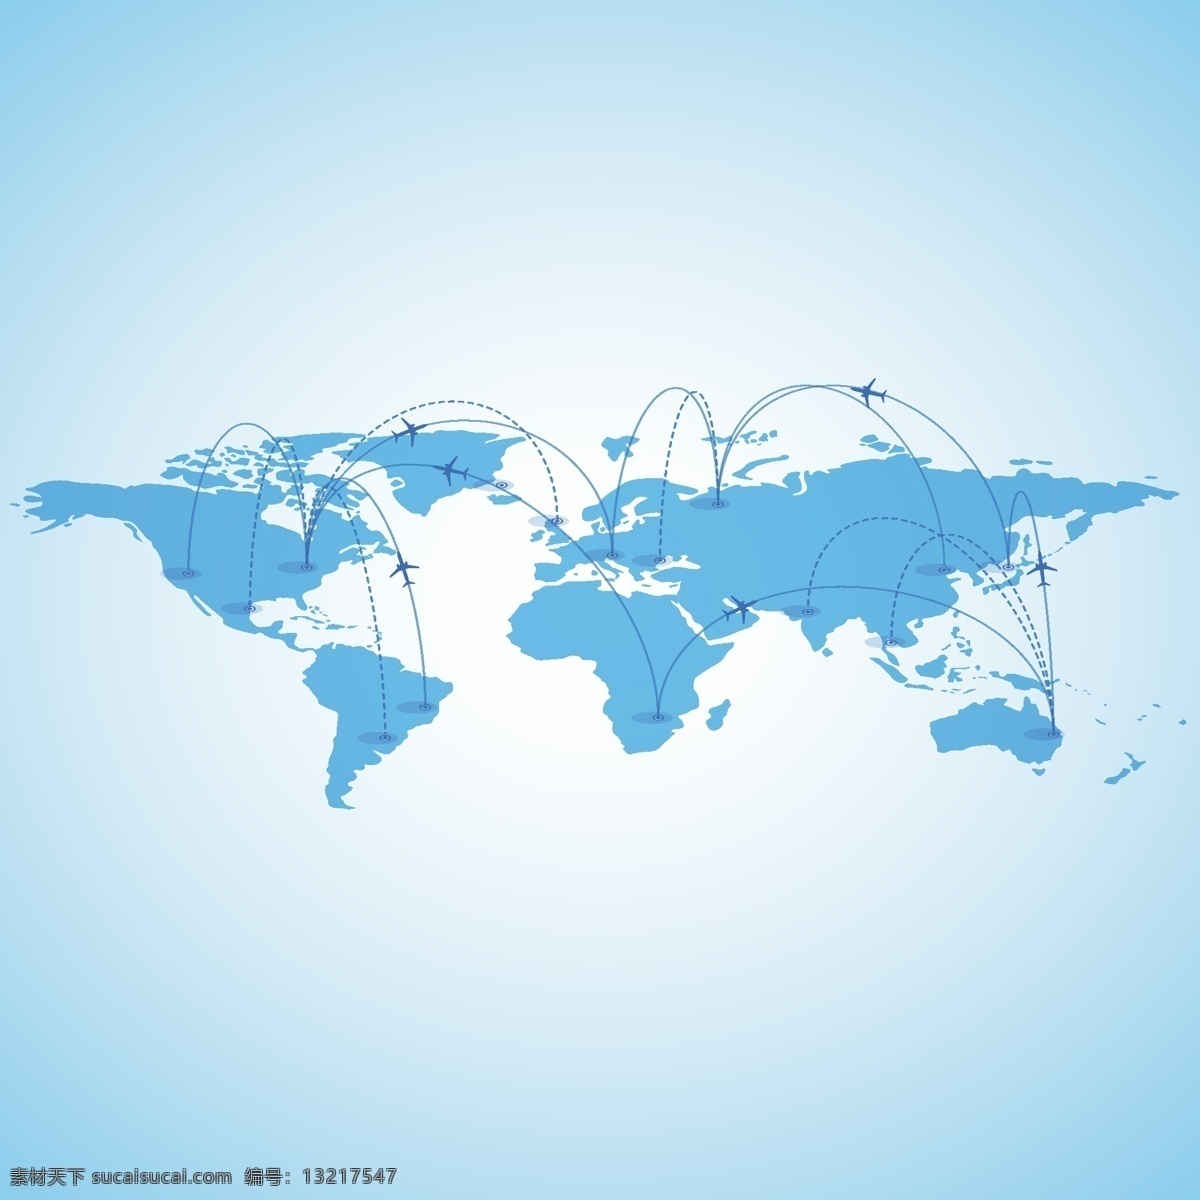 商务 信息 科技 世界地图 辐射全球 全球网络 信息网络 信息科技 网络科技 光芒 蓝色背景 底纹背景 eps格式 青色 天蓝色